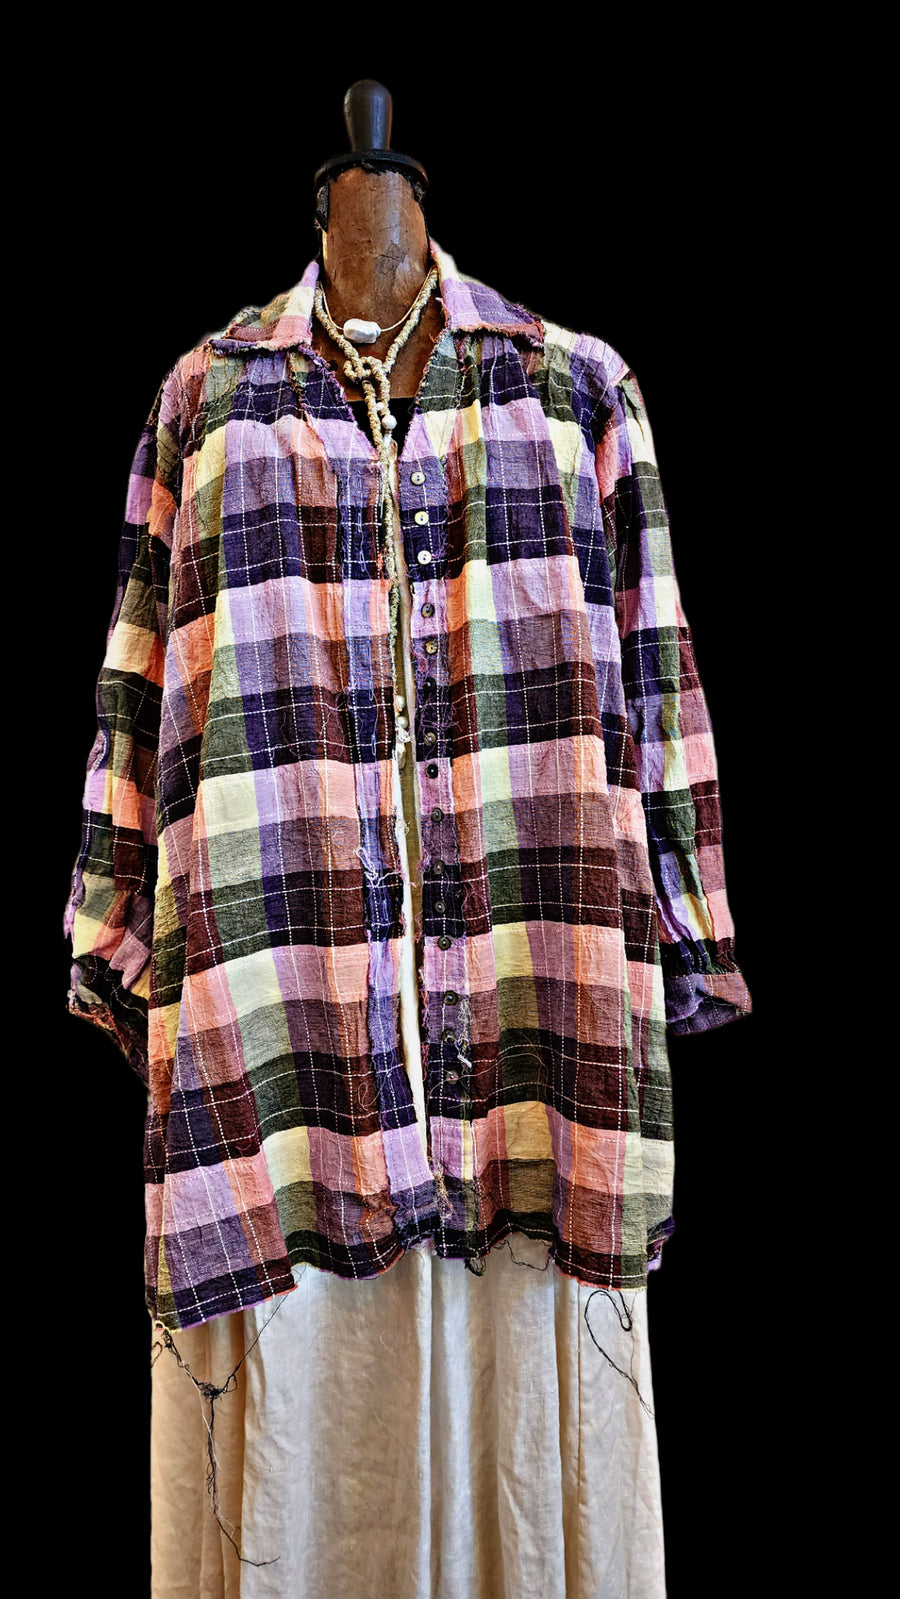 Amano Pintuck Shirt (LinenCot) - Check lilac